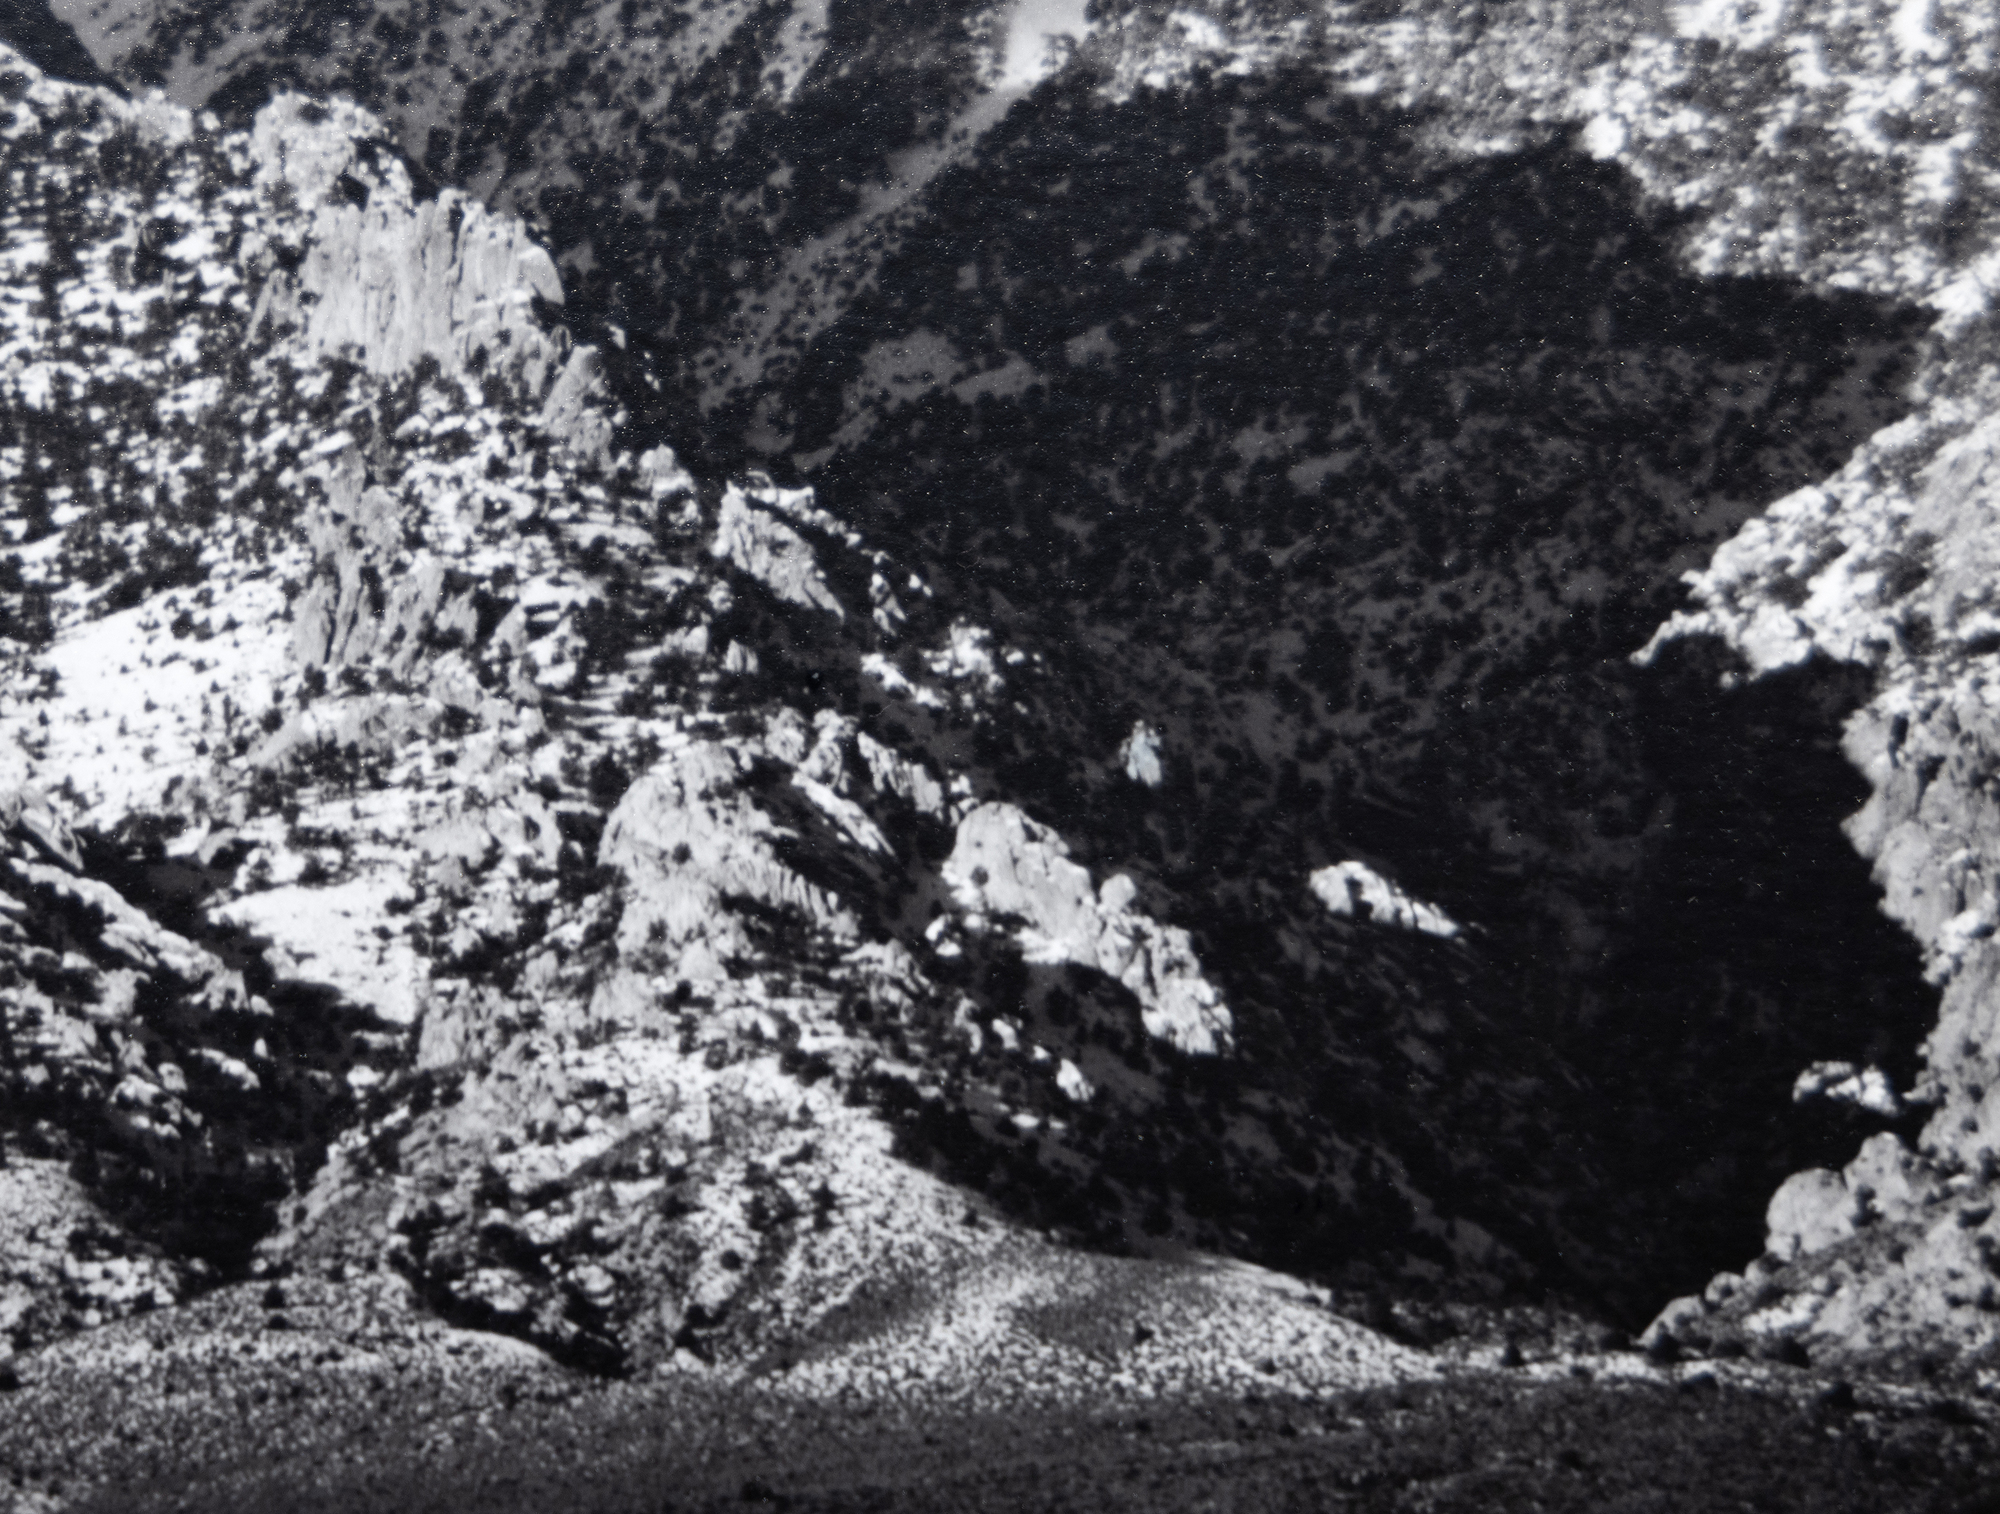 アンセル・アダムスがオーエンズ・バレーを探検し、シエラネバダ山脈の東側にそびえ立つ景色を撮影したことは、非常に重要な意味を持つ。のーオーエンズ・バレーからのののーこのーこのーこのーアメリカのーアメリカー山脈ののーオーエンズ・バレーからーこのーアメリカー山脈のーアメリカー山脈ーーこのー山脈ーー山脈ーー山脈ーー山脈ーー山脈ーー山脈ーー山脈ーー山脈ーー山脈ーー山脈ーー山脈ーー山脈ーー山脈ーー山脈ーーMount Williamson, Sierra Nevada, from Owens Valley, was likely photographed in 1944, shortly after incorporating the Zone System that allowed for a wide tonal range and balanced exposure with clarity in both highlights and shadows.1978年8月にプリントされた本作品は多くの美術館に所蔵されているが、コレクターの間ではアンセル・アダムスのプリントの中でも稀少な部類に入る。